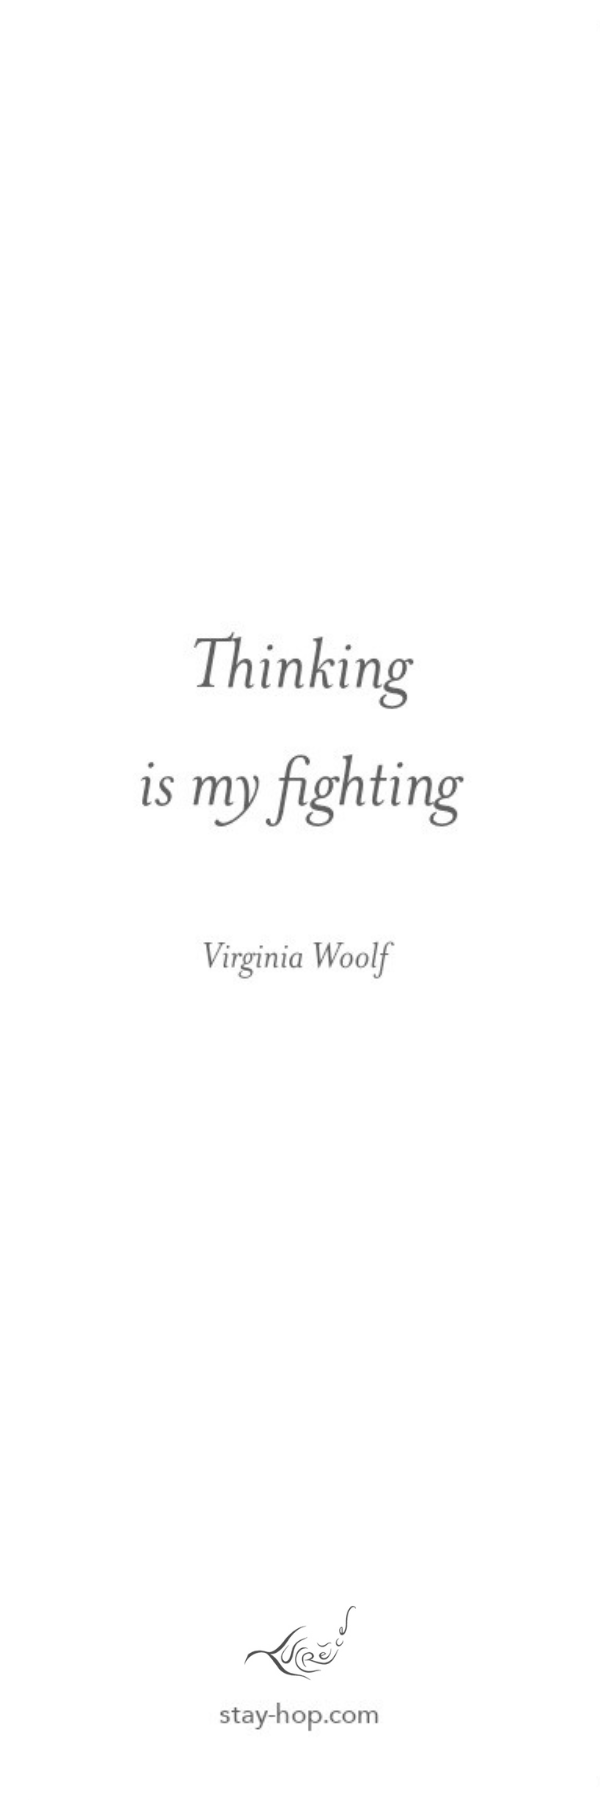 Segnalibro Virginia Woolf - Lucrèce